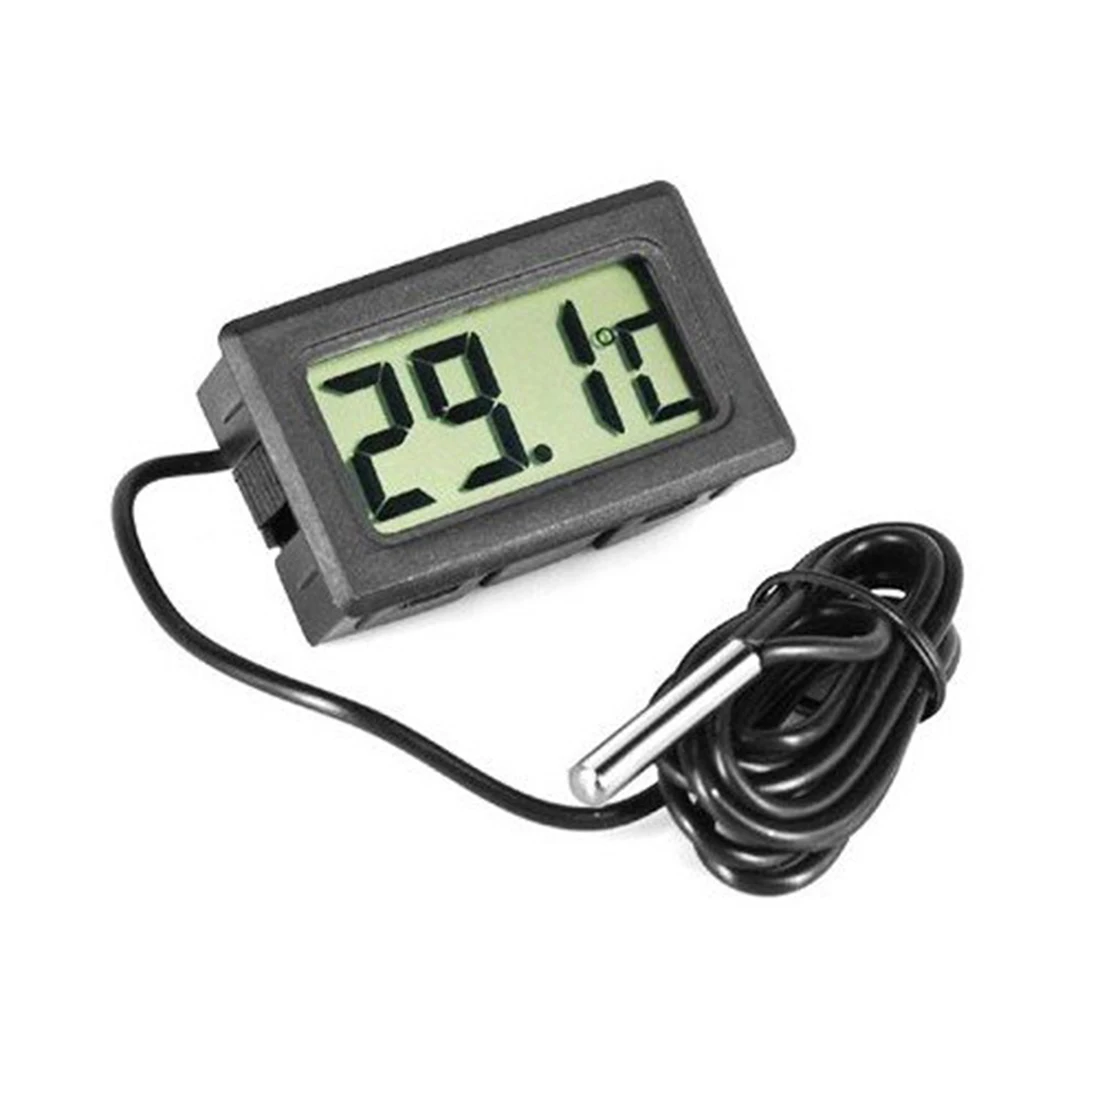 Цифровой термометр с ЖК-дисплеем для холодильников, морозильников, охладители, охладители для аквариума, 1 м, зонд, Черный термометр-50~ 110 градусов